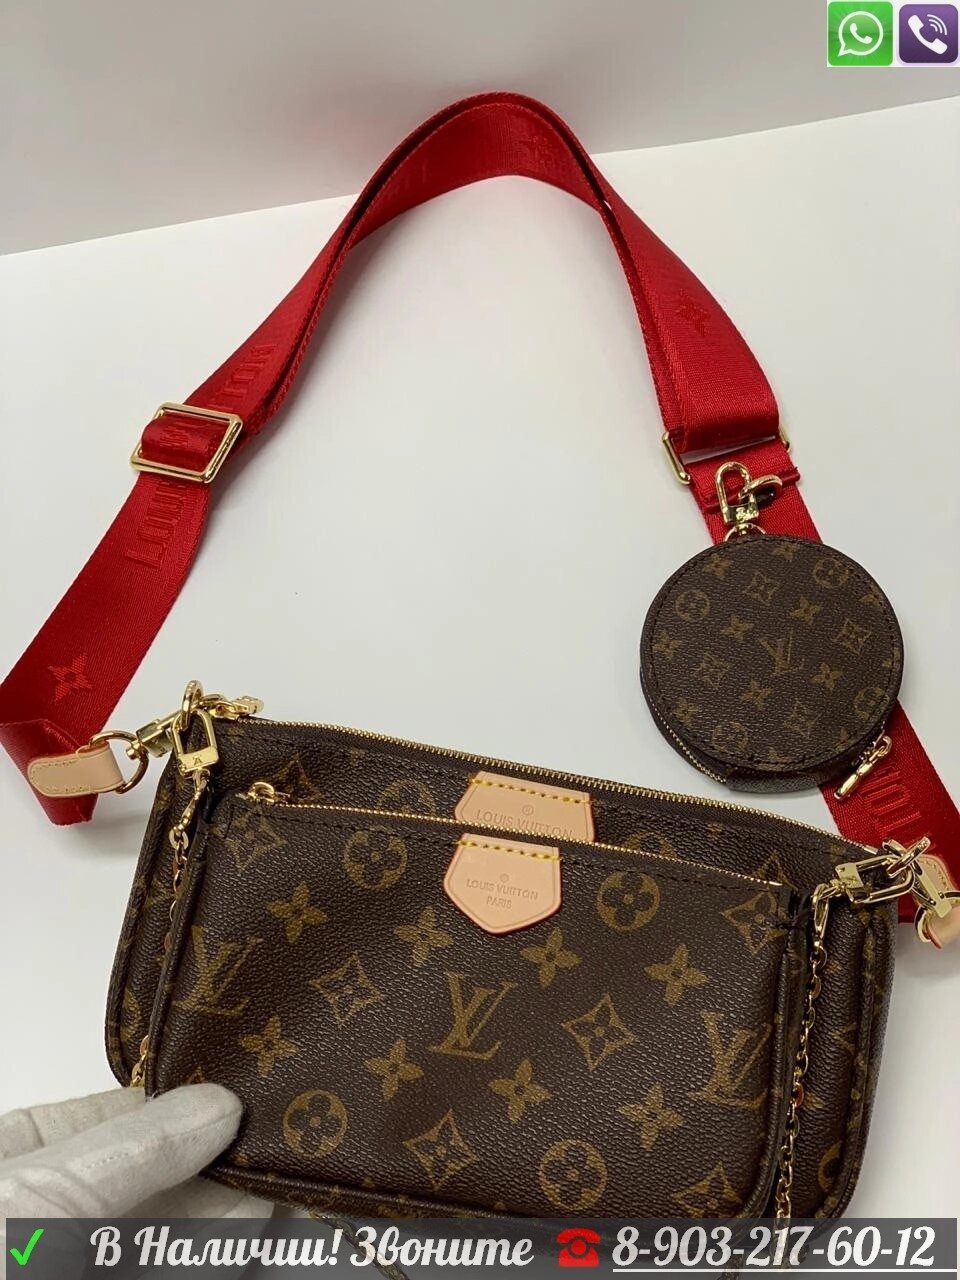 Louis Vuitton Pochette Multi двойная сумка с круглым кошельком на широком ремне от компании Интернет Магазин брендовых сумок и обуви - фото 1